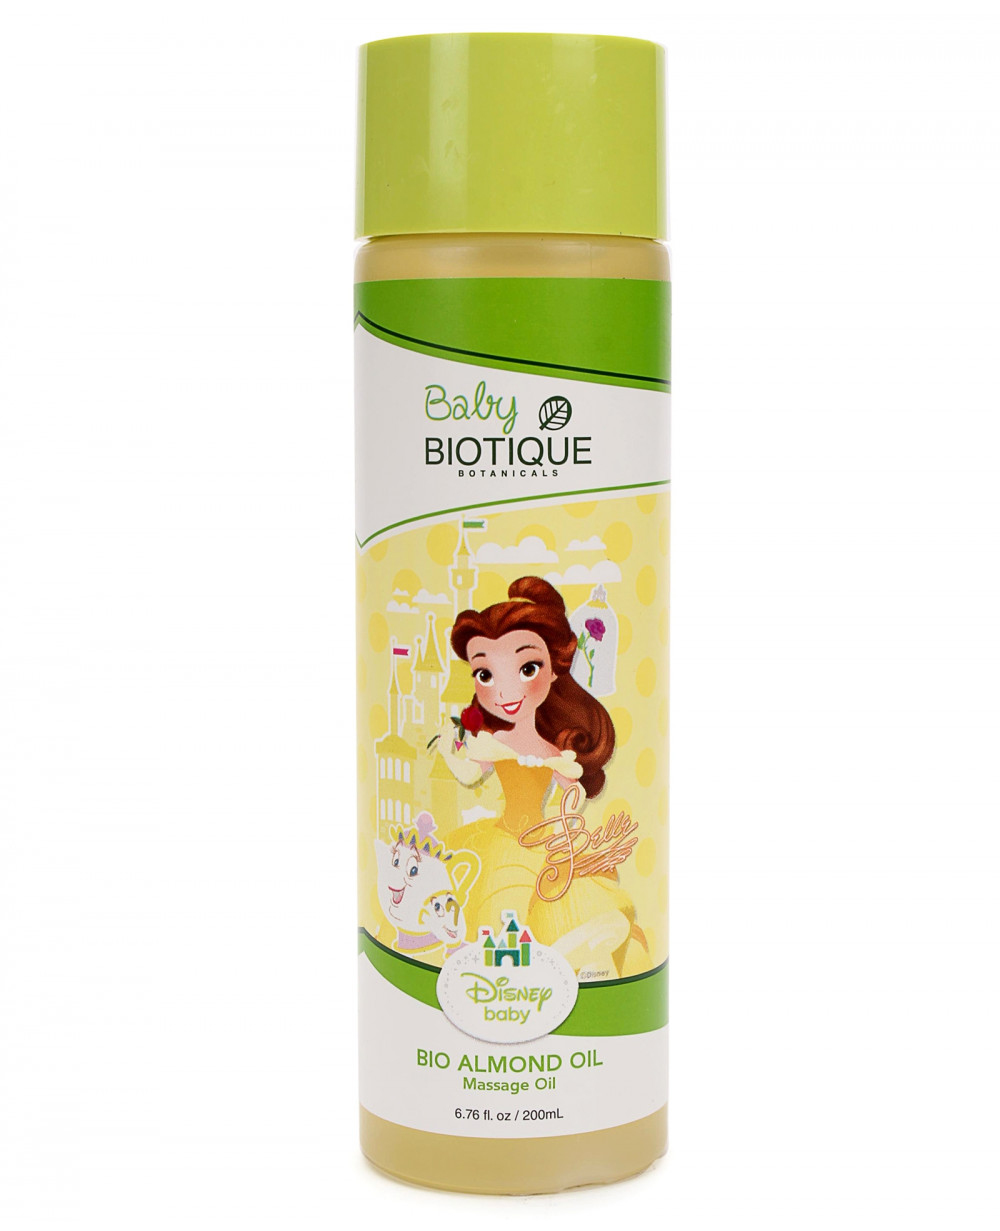 Baby Biotique Bio Almond (Princess) Massage Oil 8465 - 200 ml